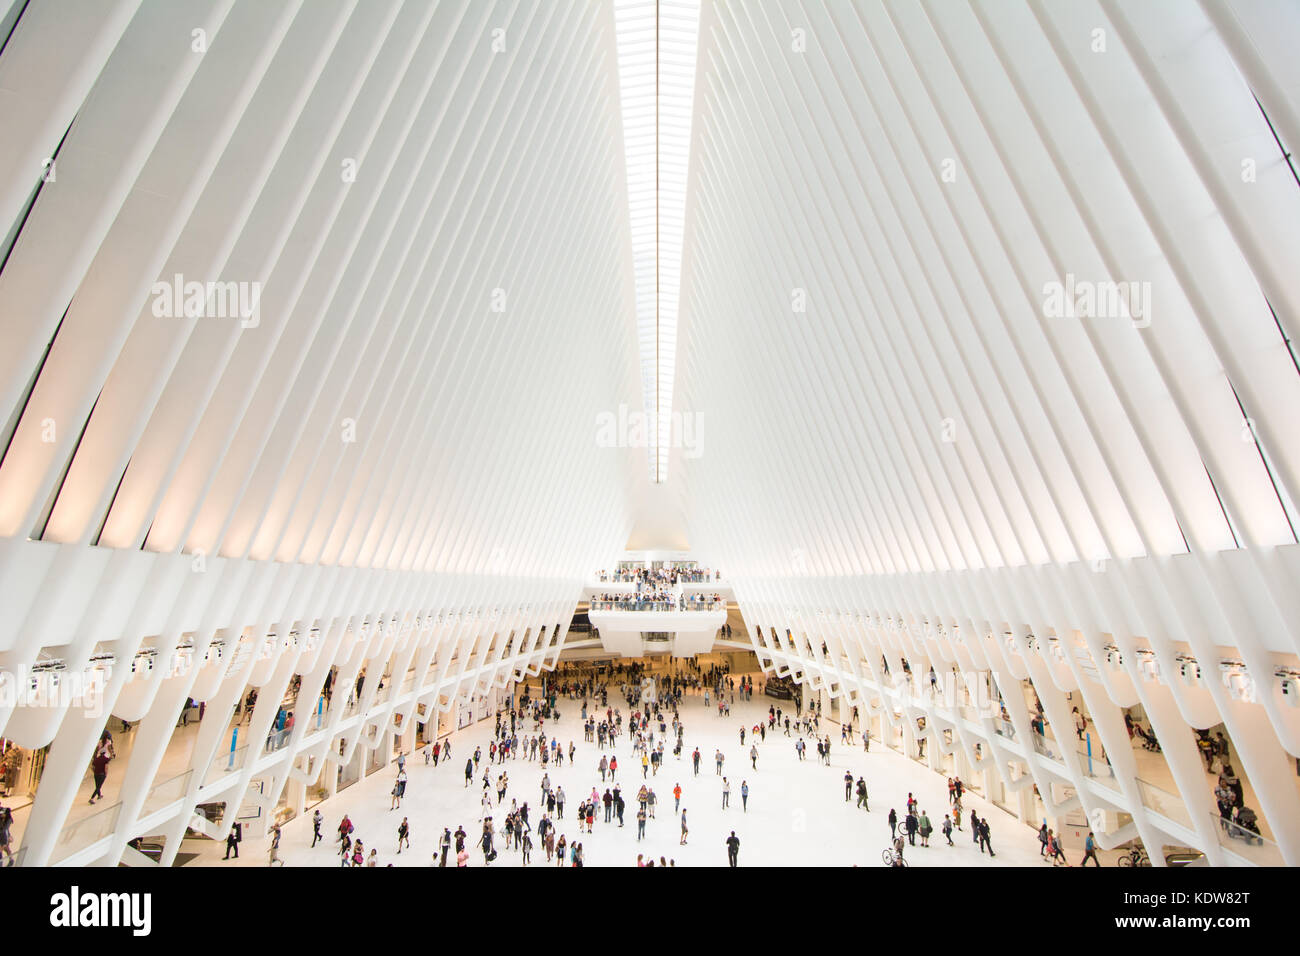 Die beeindruckende Architektur des Oculus am World Trade Center  Verkehrsknotenpunkt in New York City, United States Stockfotografie - Alamy